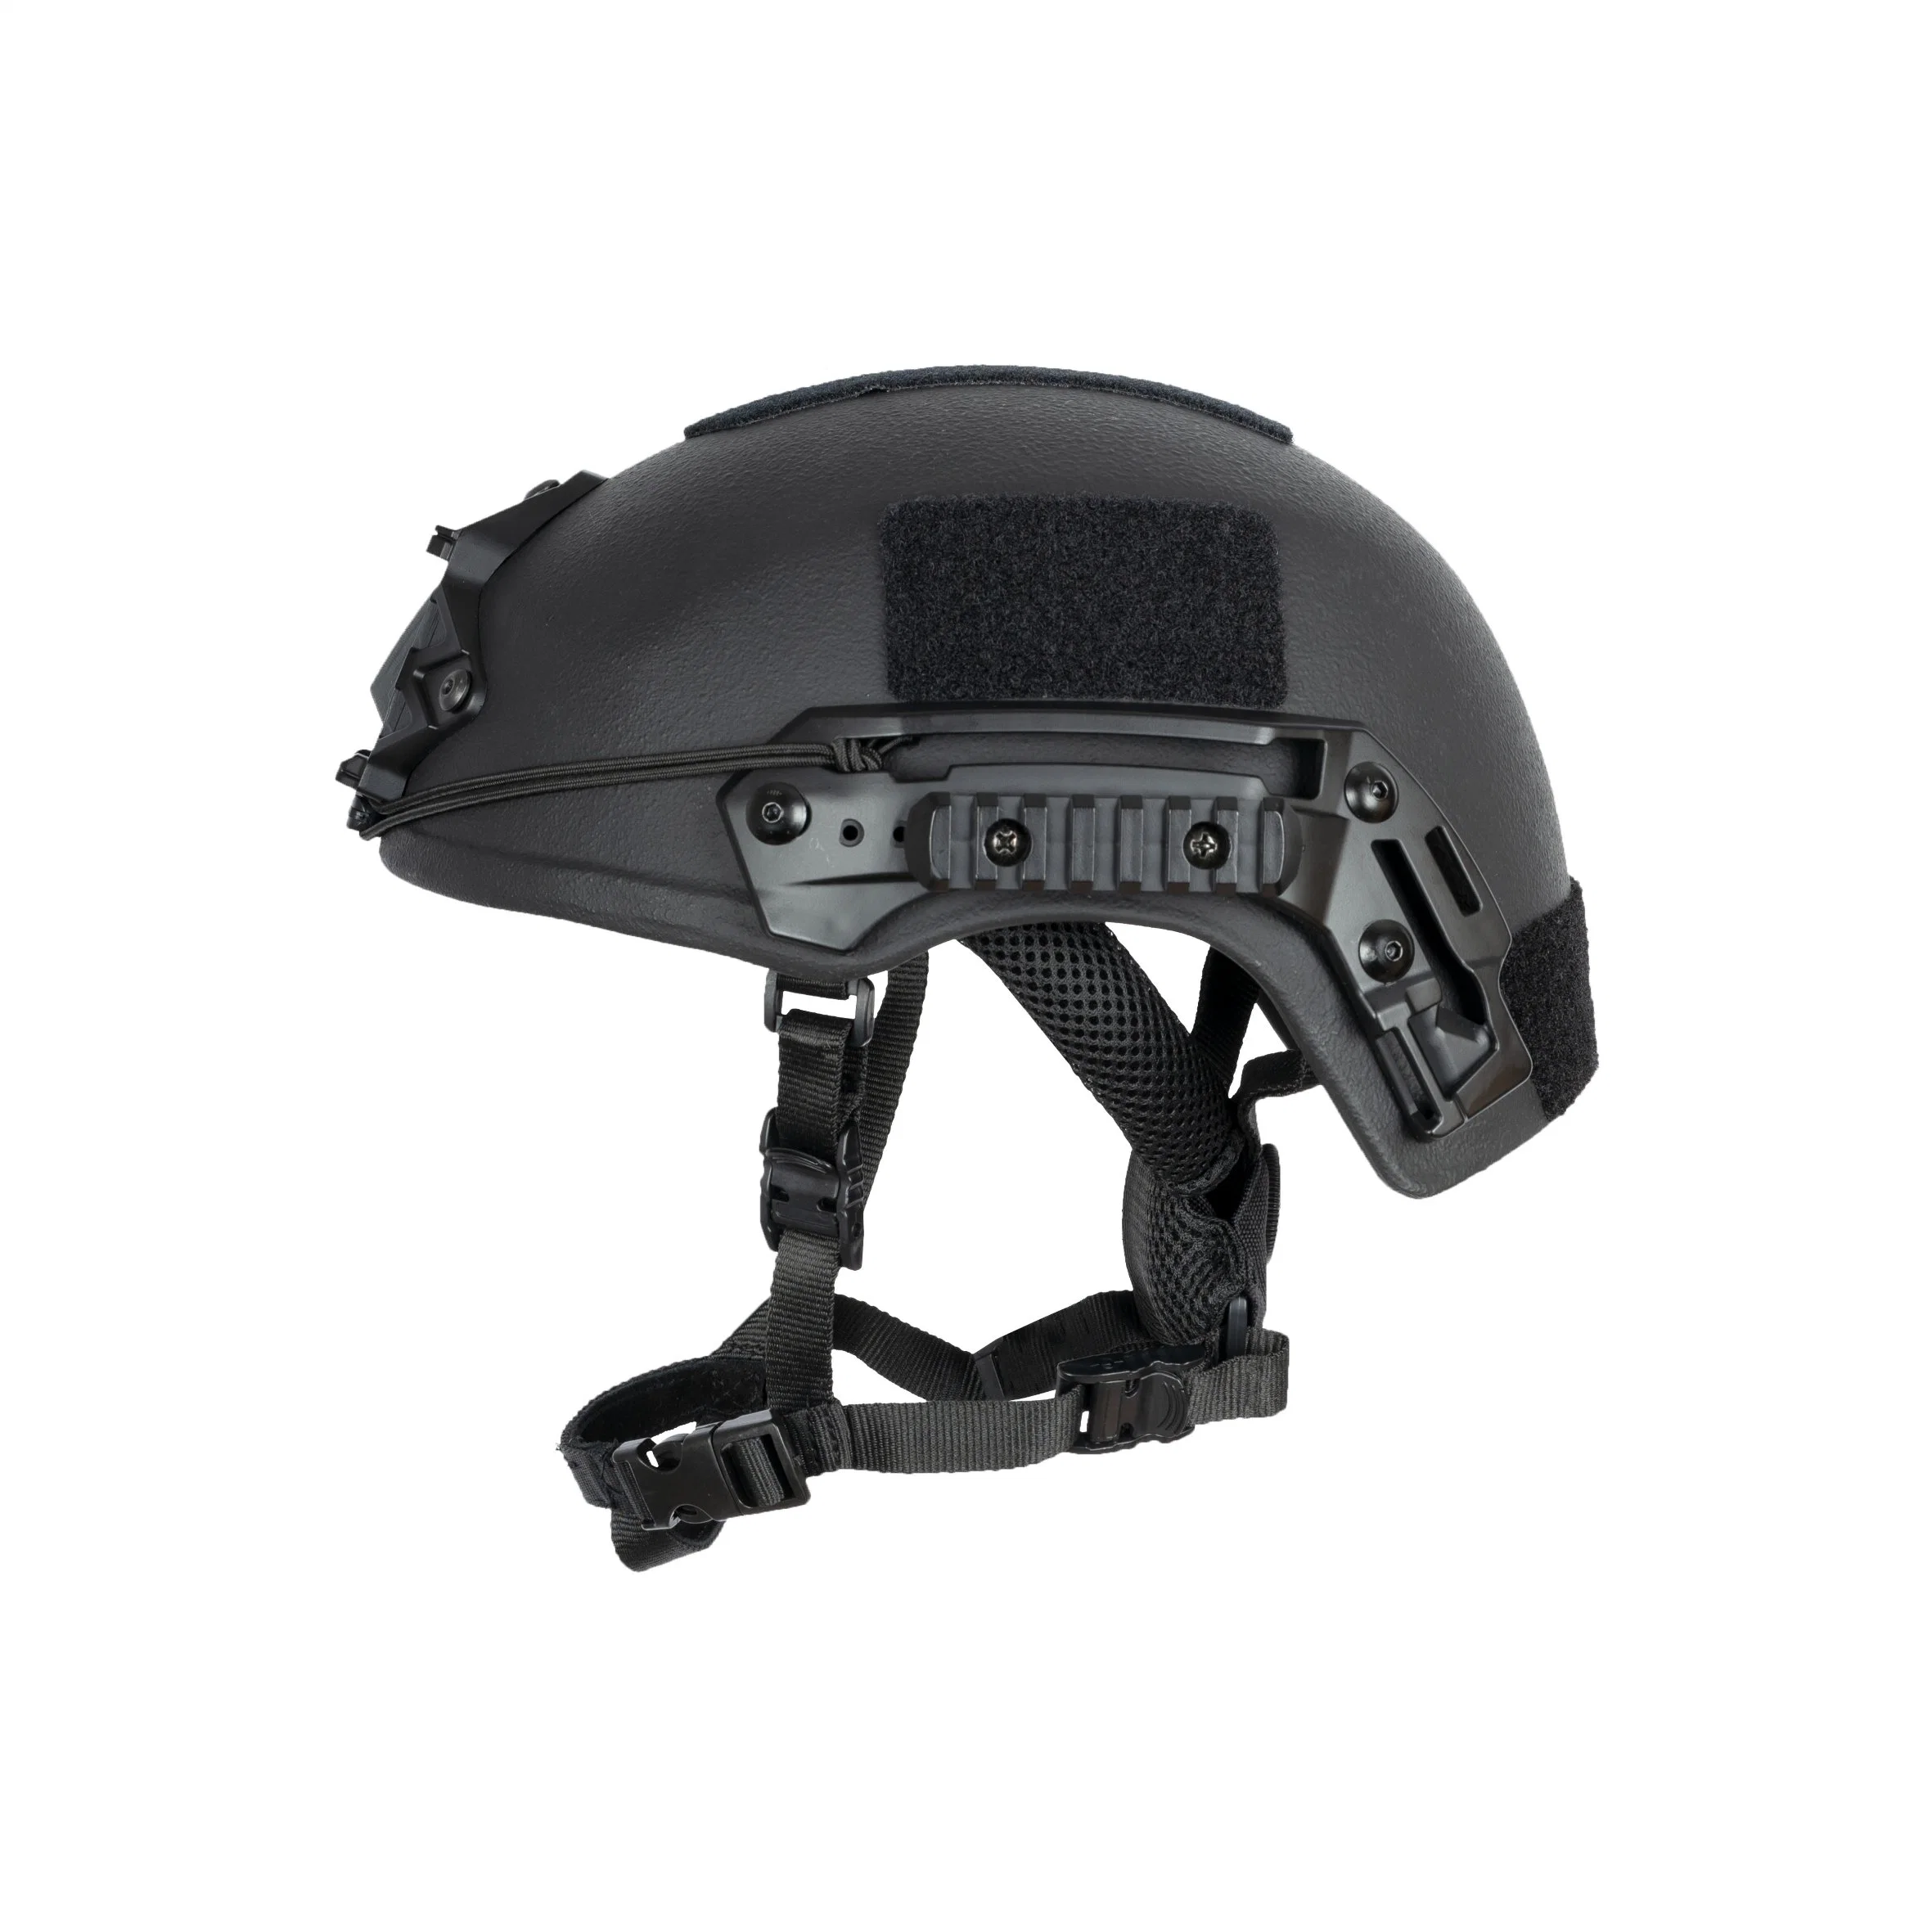 Bulletproof Nij Iiia Team Wendy High Cut Aramid Ballistic Helmet